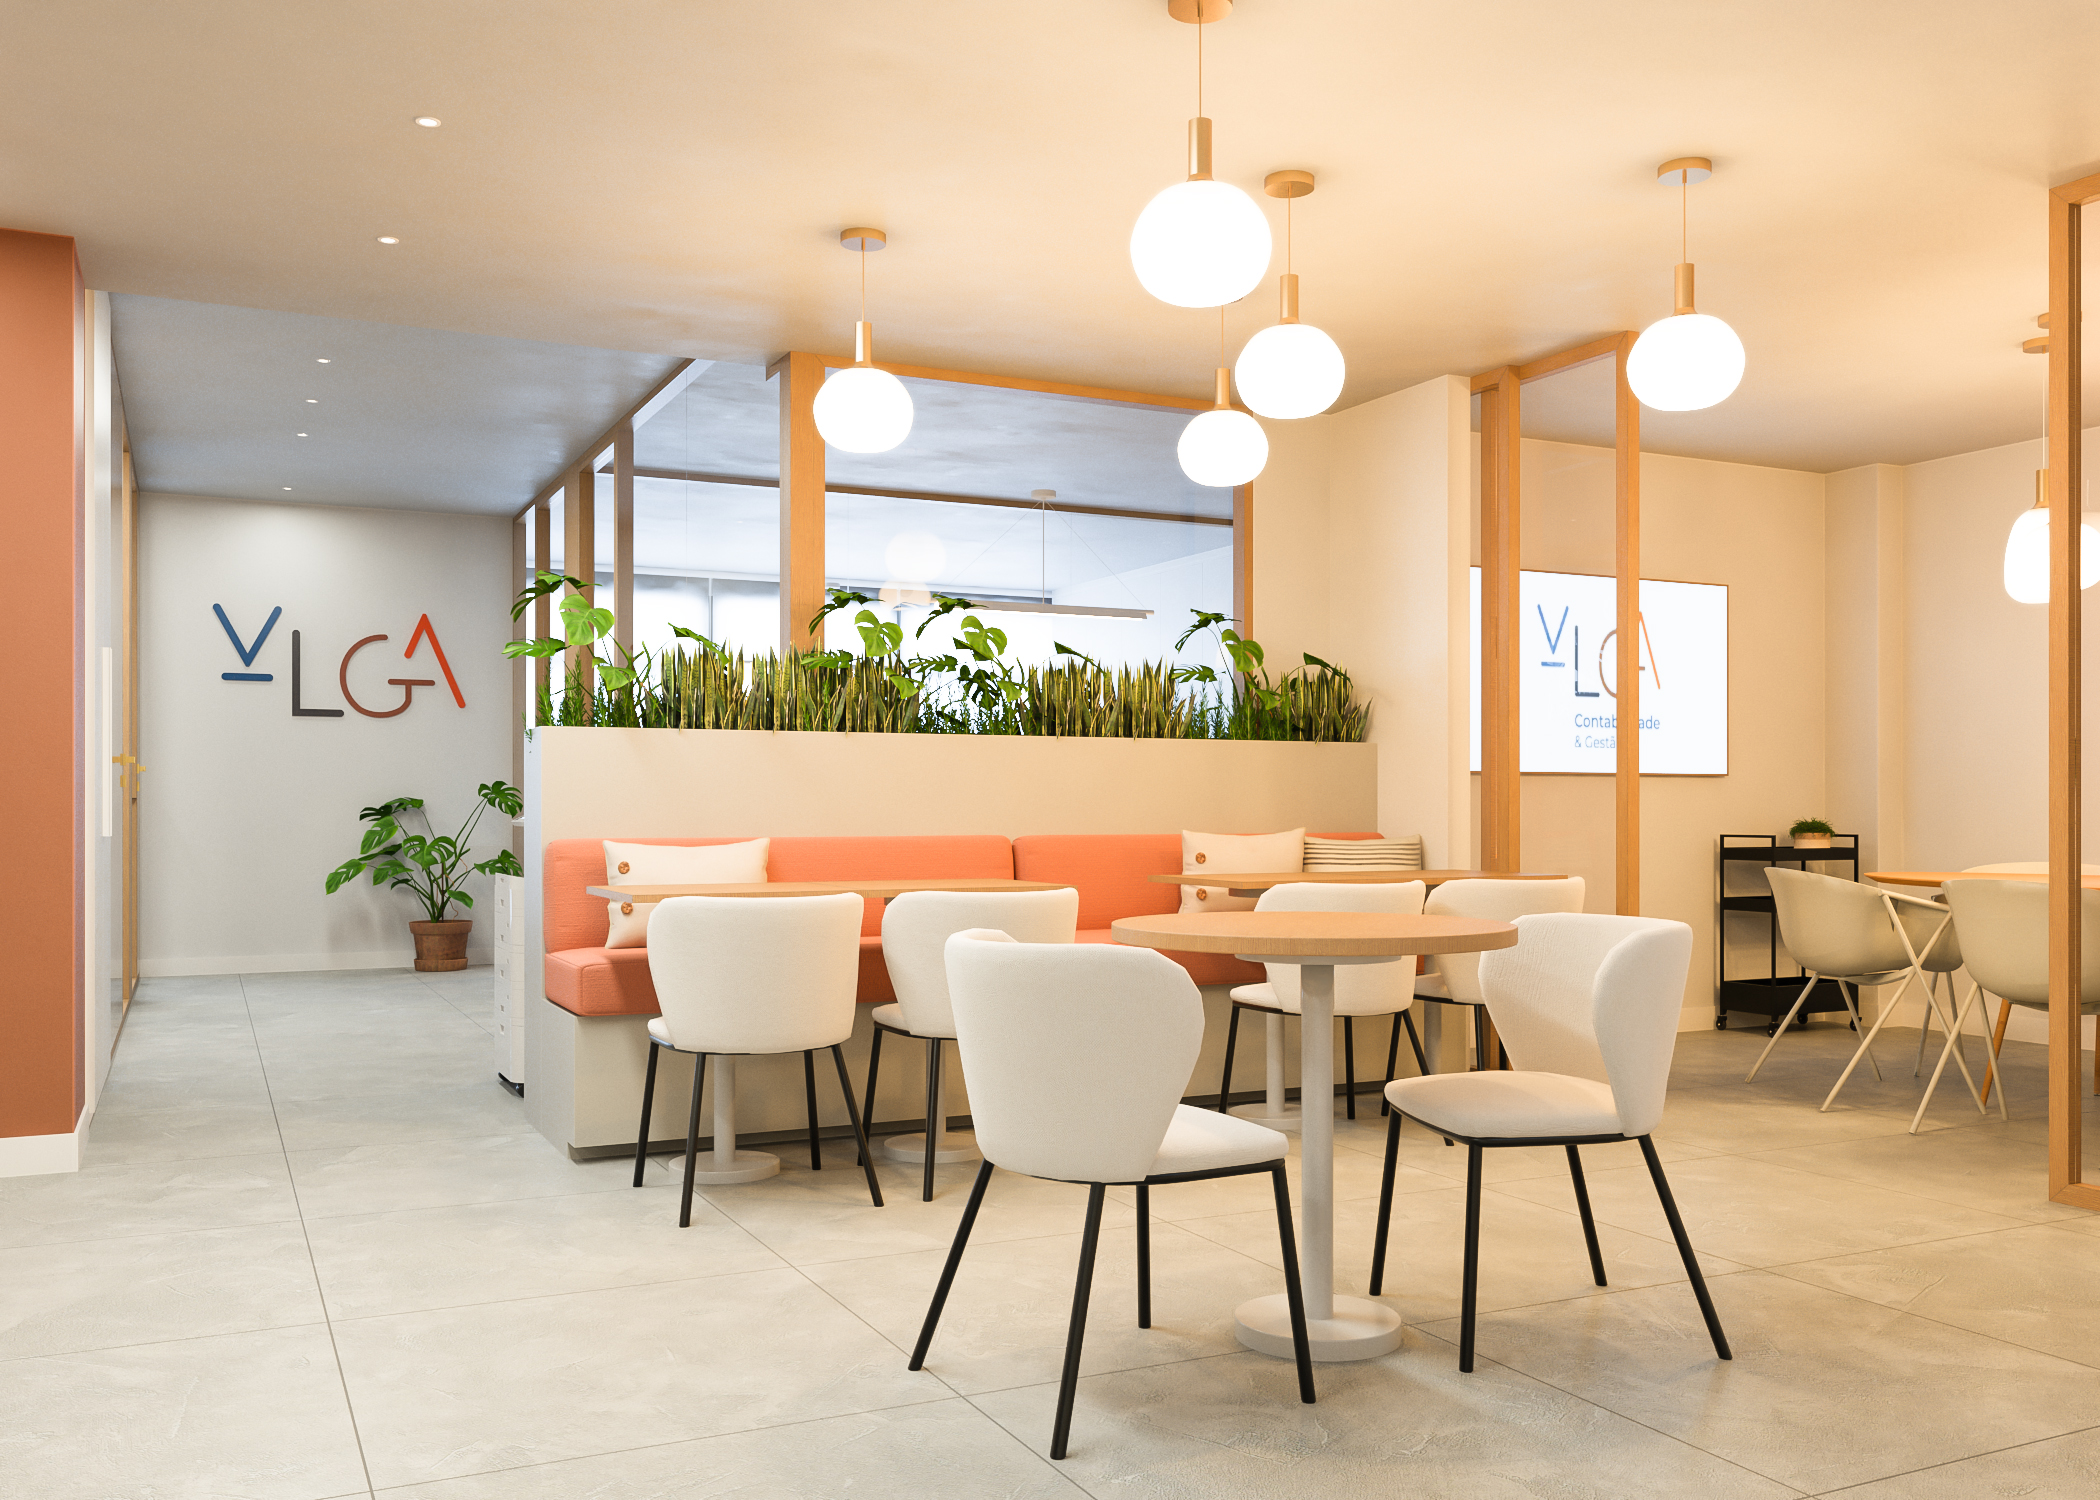 Decoração e renovação de projeto de escritórios - VGLA; zona lounge com cadeiras e sofá em tons muito neutros e laranja